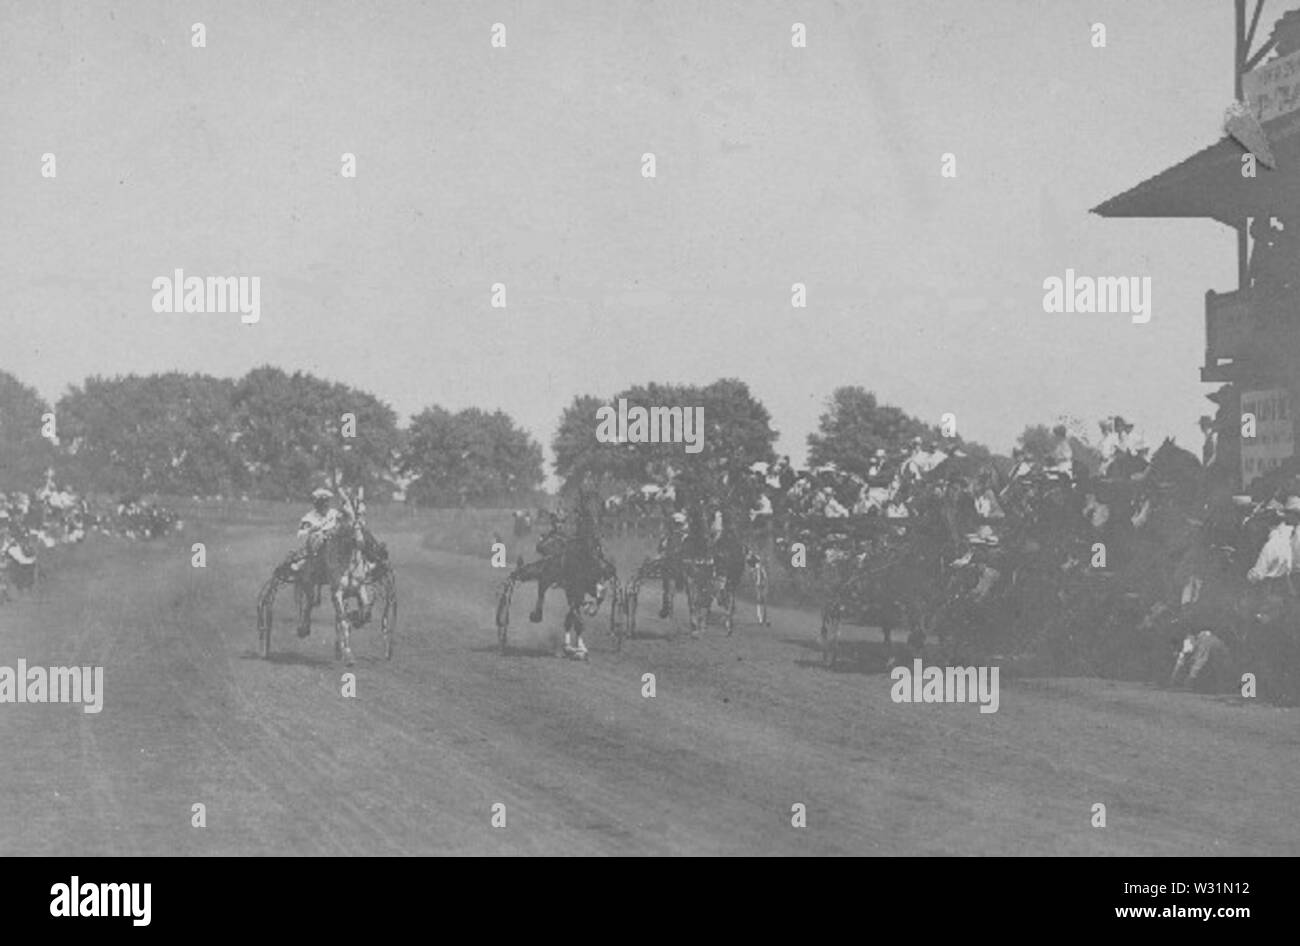 Racetrack in Pecan Gap 1905-1910 Stock Photo - Alamy